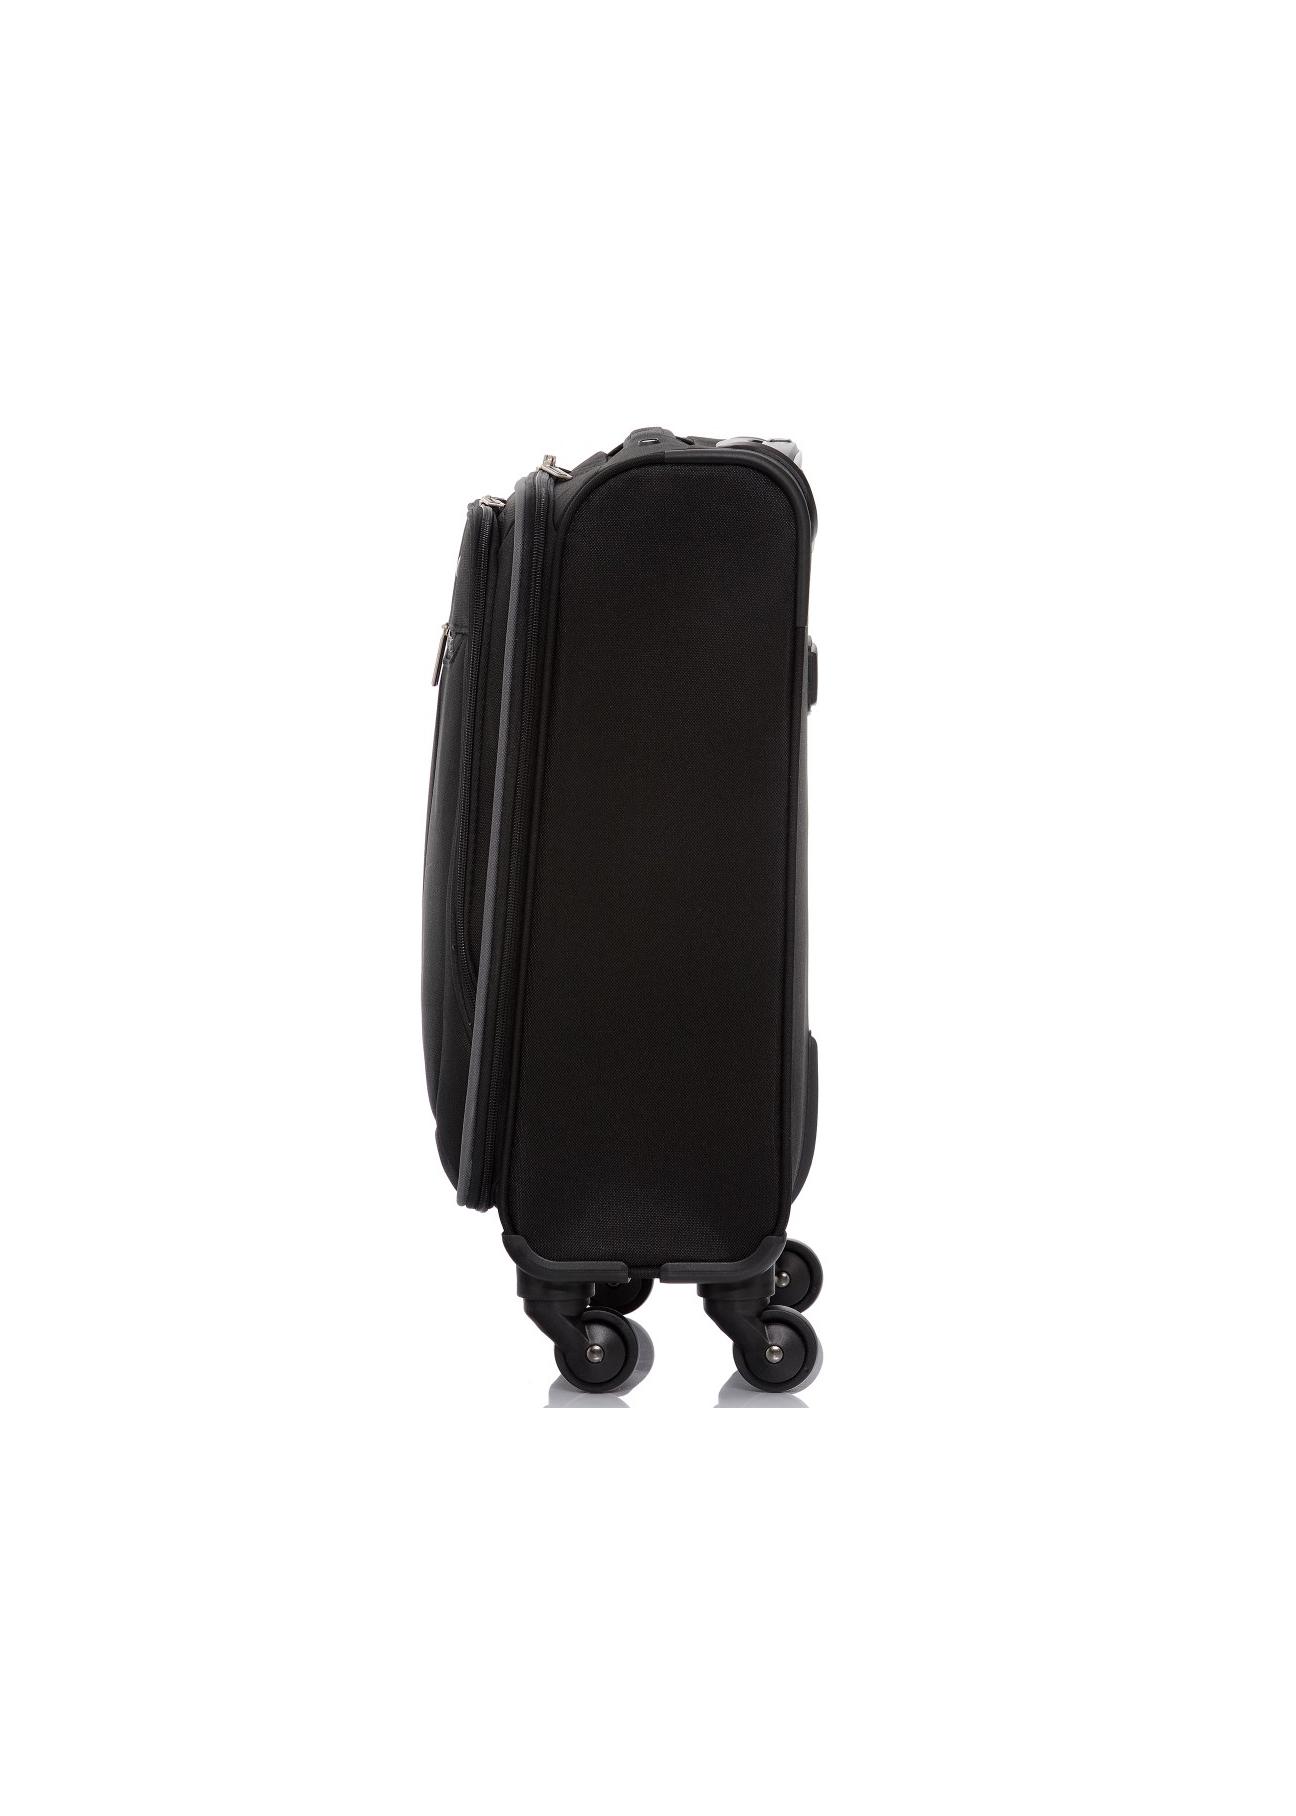 Mała walizka na kółkach WALNY-0019-99-20(W17)